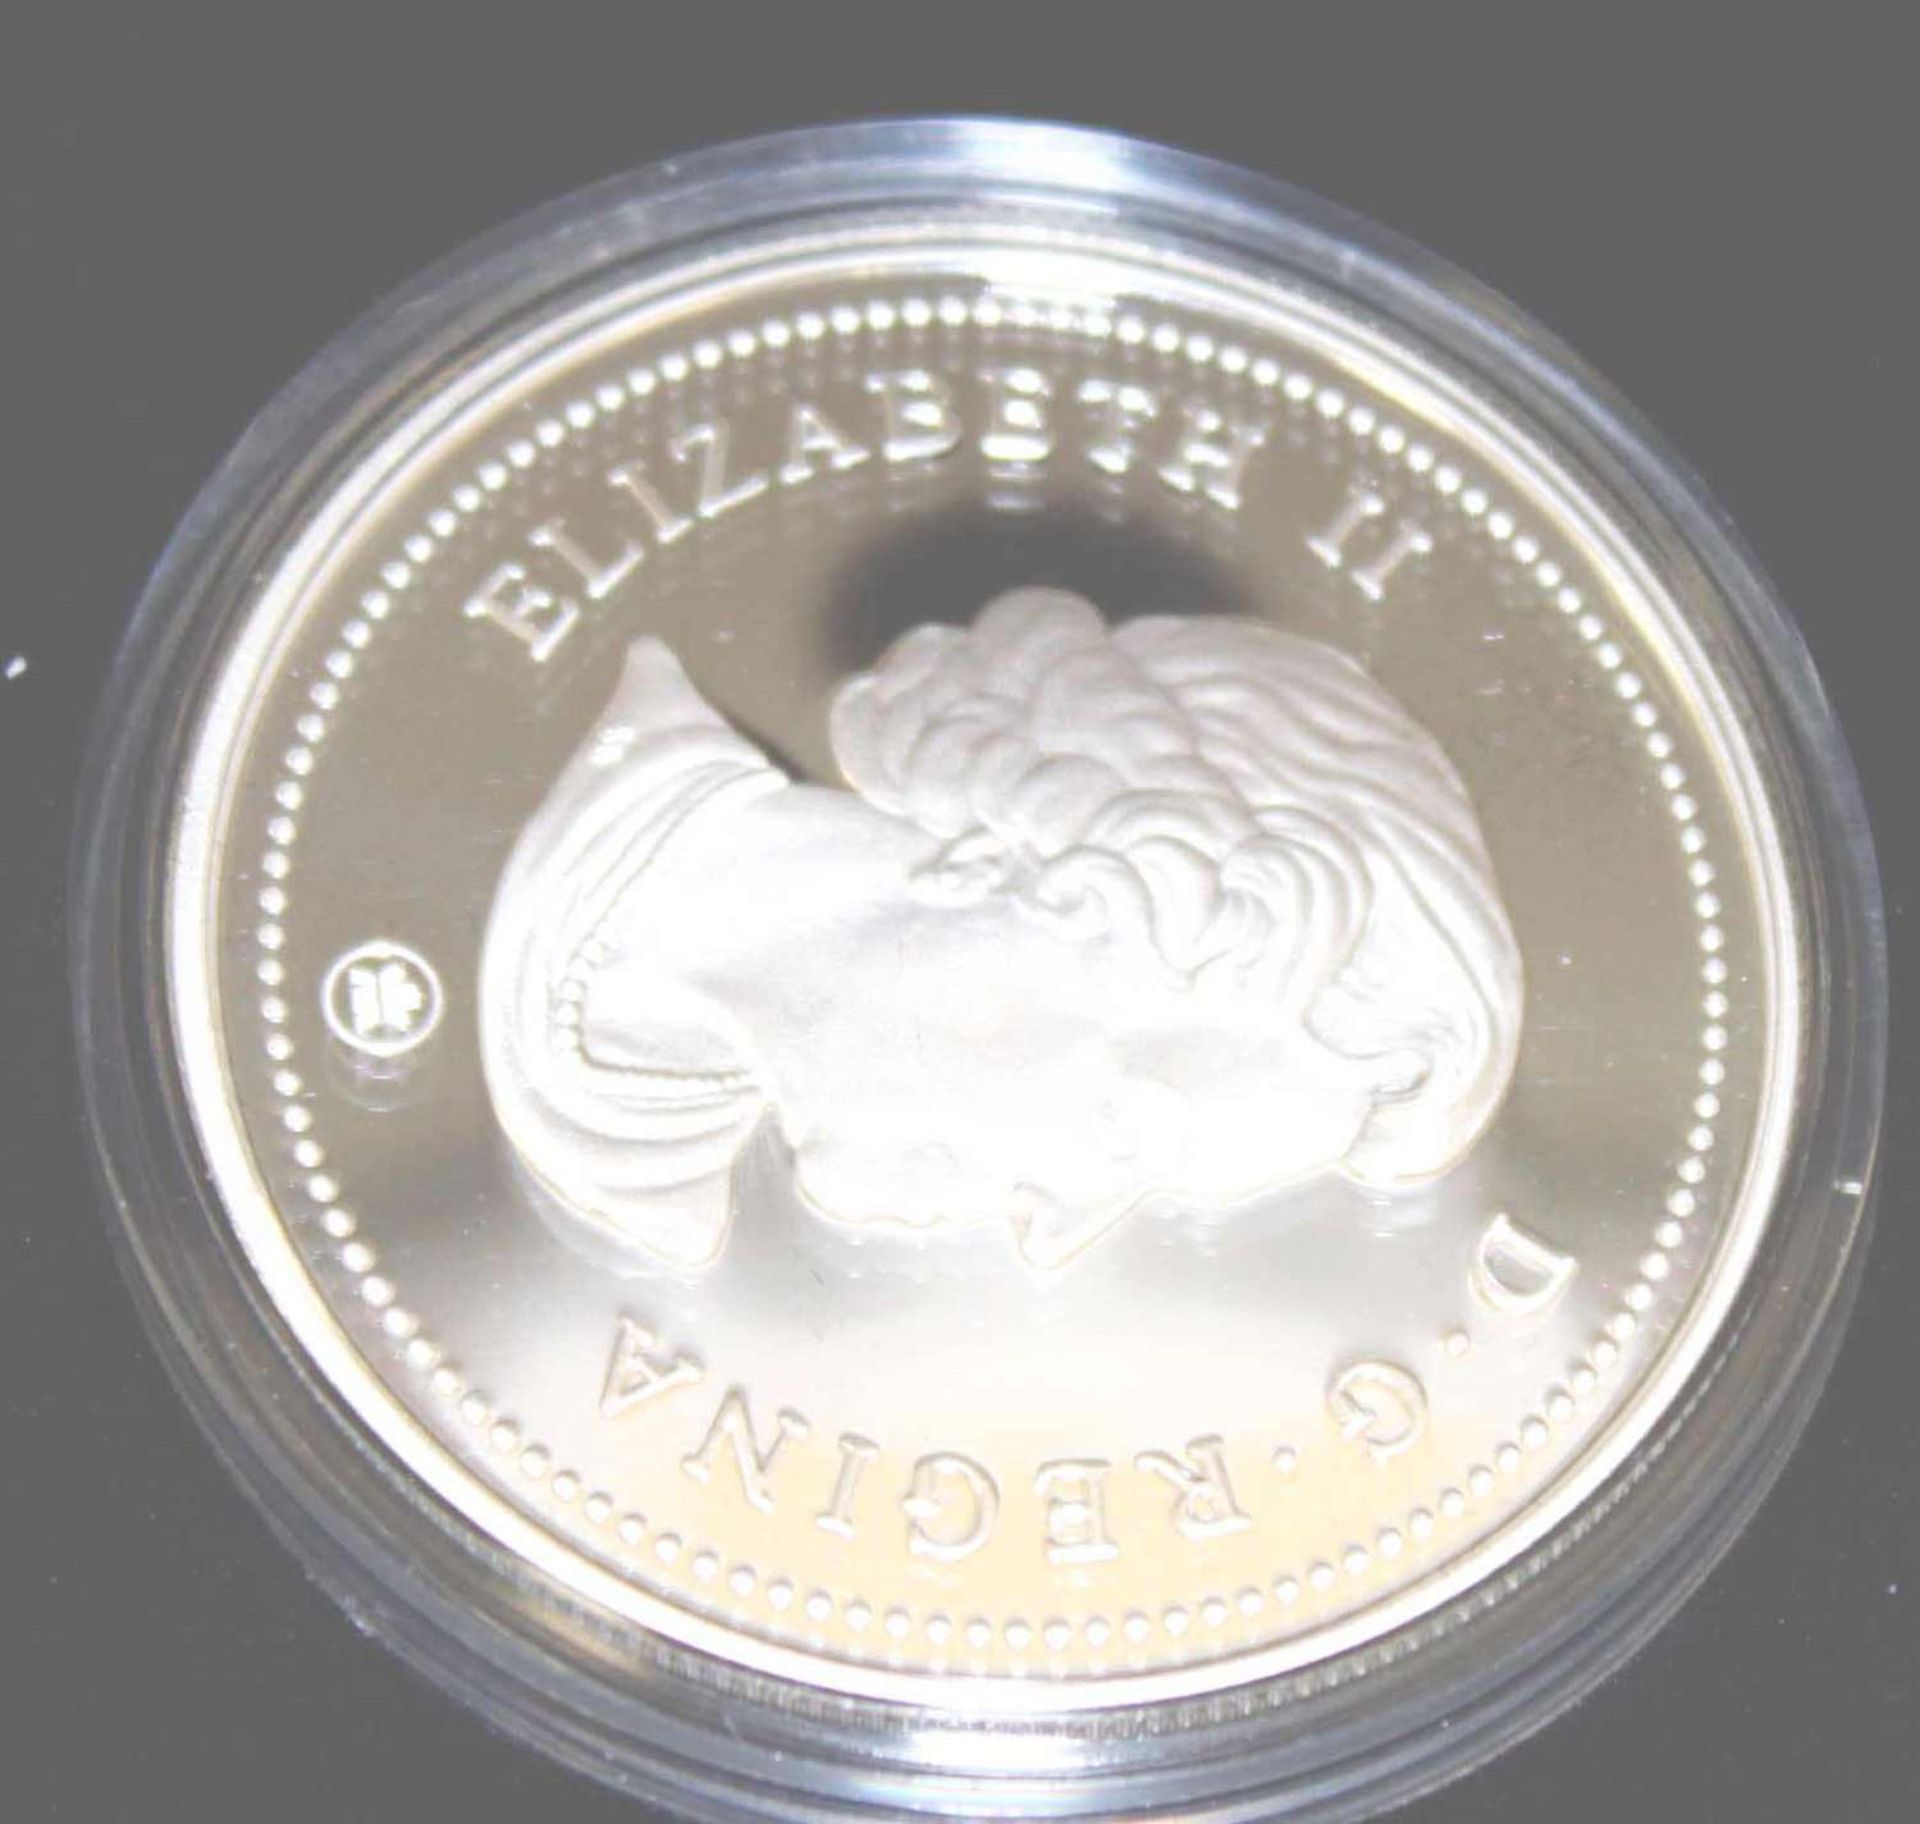 Canada Dollar von 2009, 100 Jahre Flug in Canada, Proof Silver Dollar im Etui Canada Dollar 2009, - Bild 2 aus 2